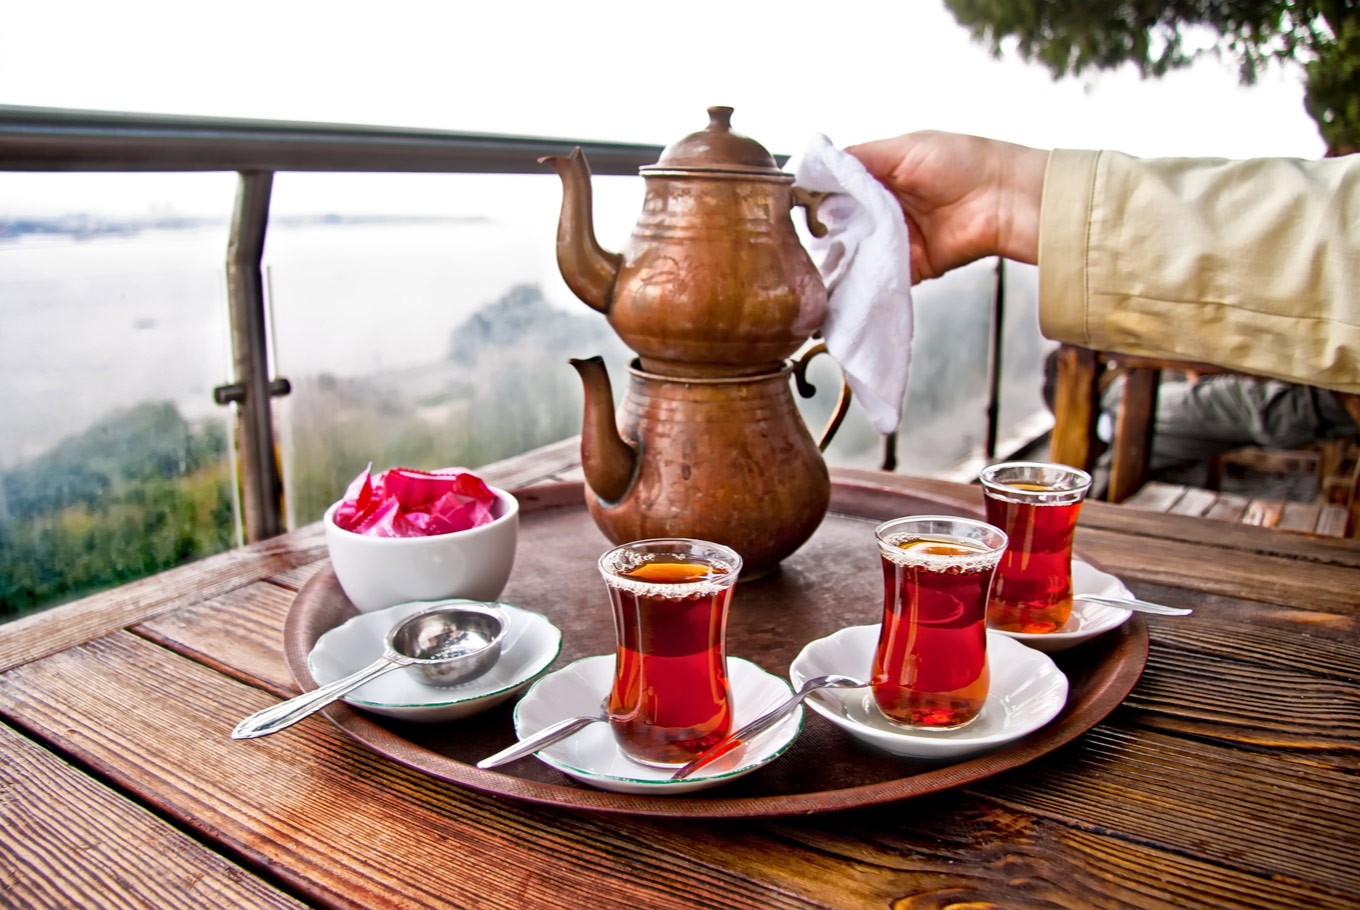 Cách pha trà có chút khác biệt so với những vùng khác, người Thổ luôn dùng bình trà kim loại 2 tầng để pha - Ảnh: Sưu tầm